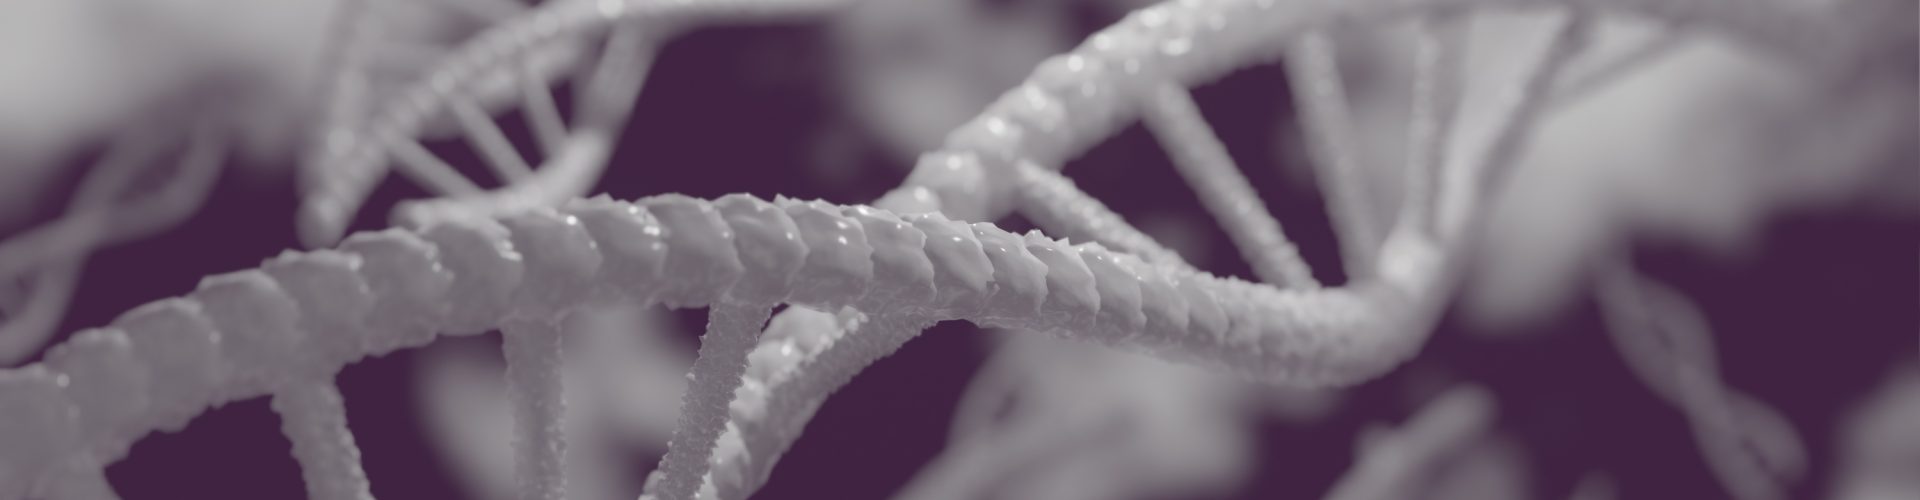 Abbildung DNA-Strang